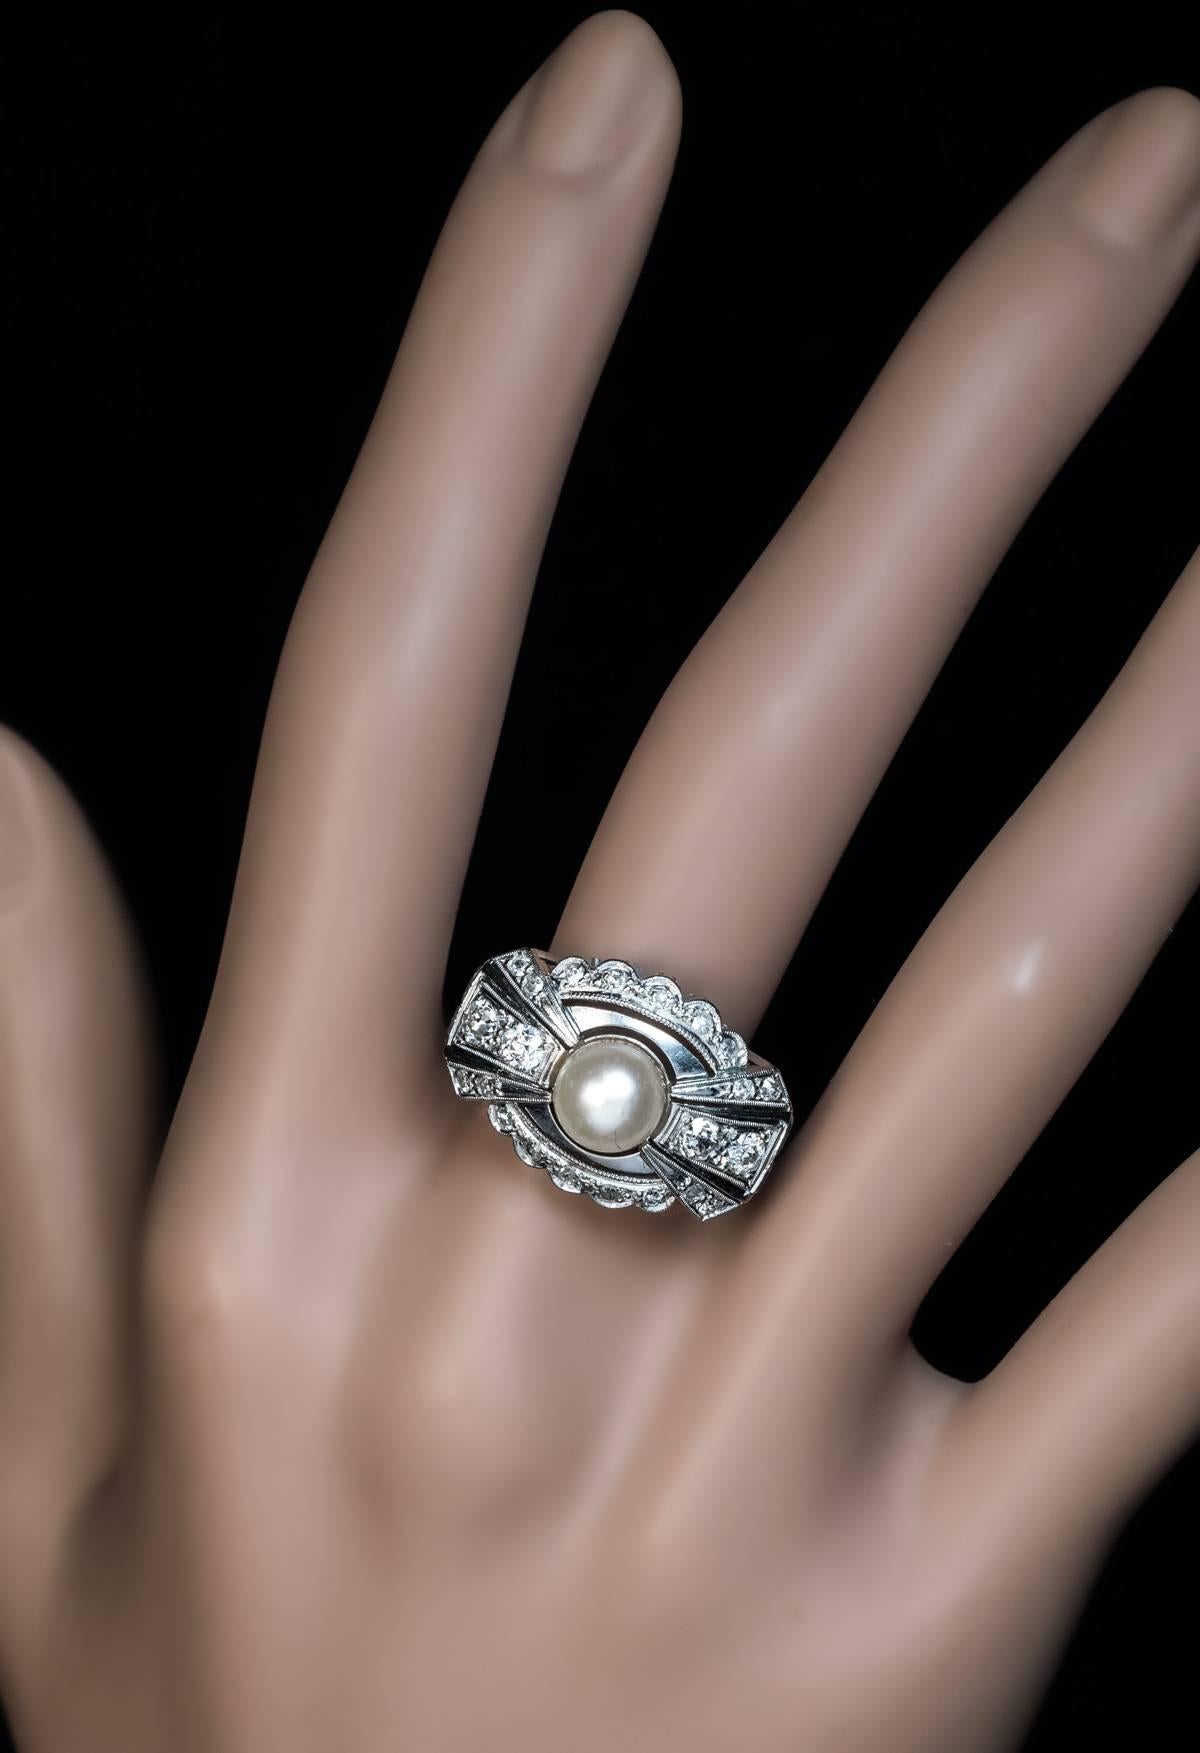 Um 1925

Der stilvolle Art-Deco-Ring aus 14 Karat Weißgold ist in Form einer stilisierten Schleife gestaltet, in deren Mitte eine 7-mm-Perle sitzt und mit funkelnden Diamanten im alten europäischen und im Einzelschliff verziert ist.

Geschätztes